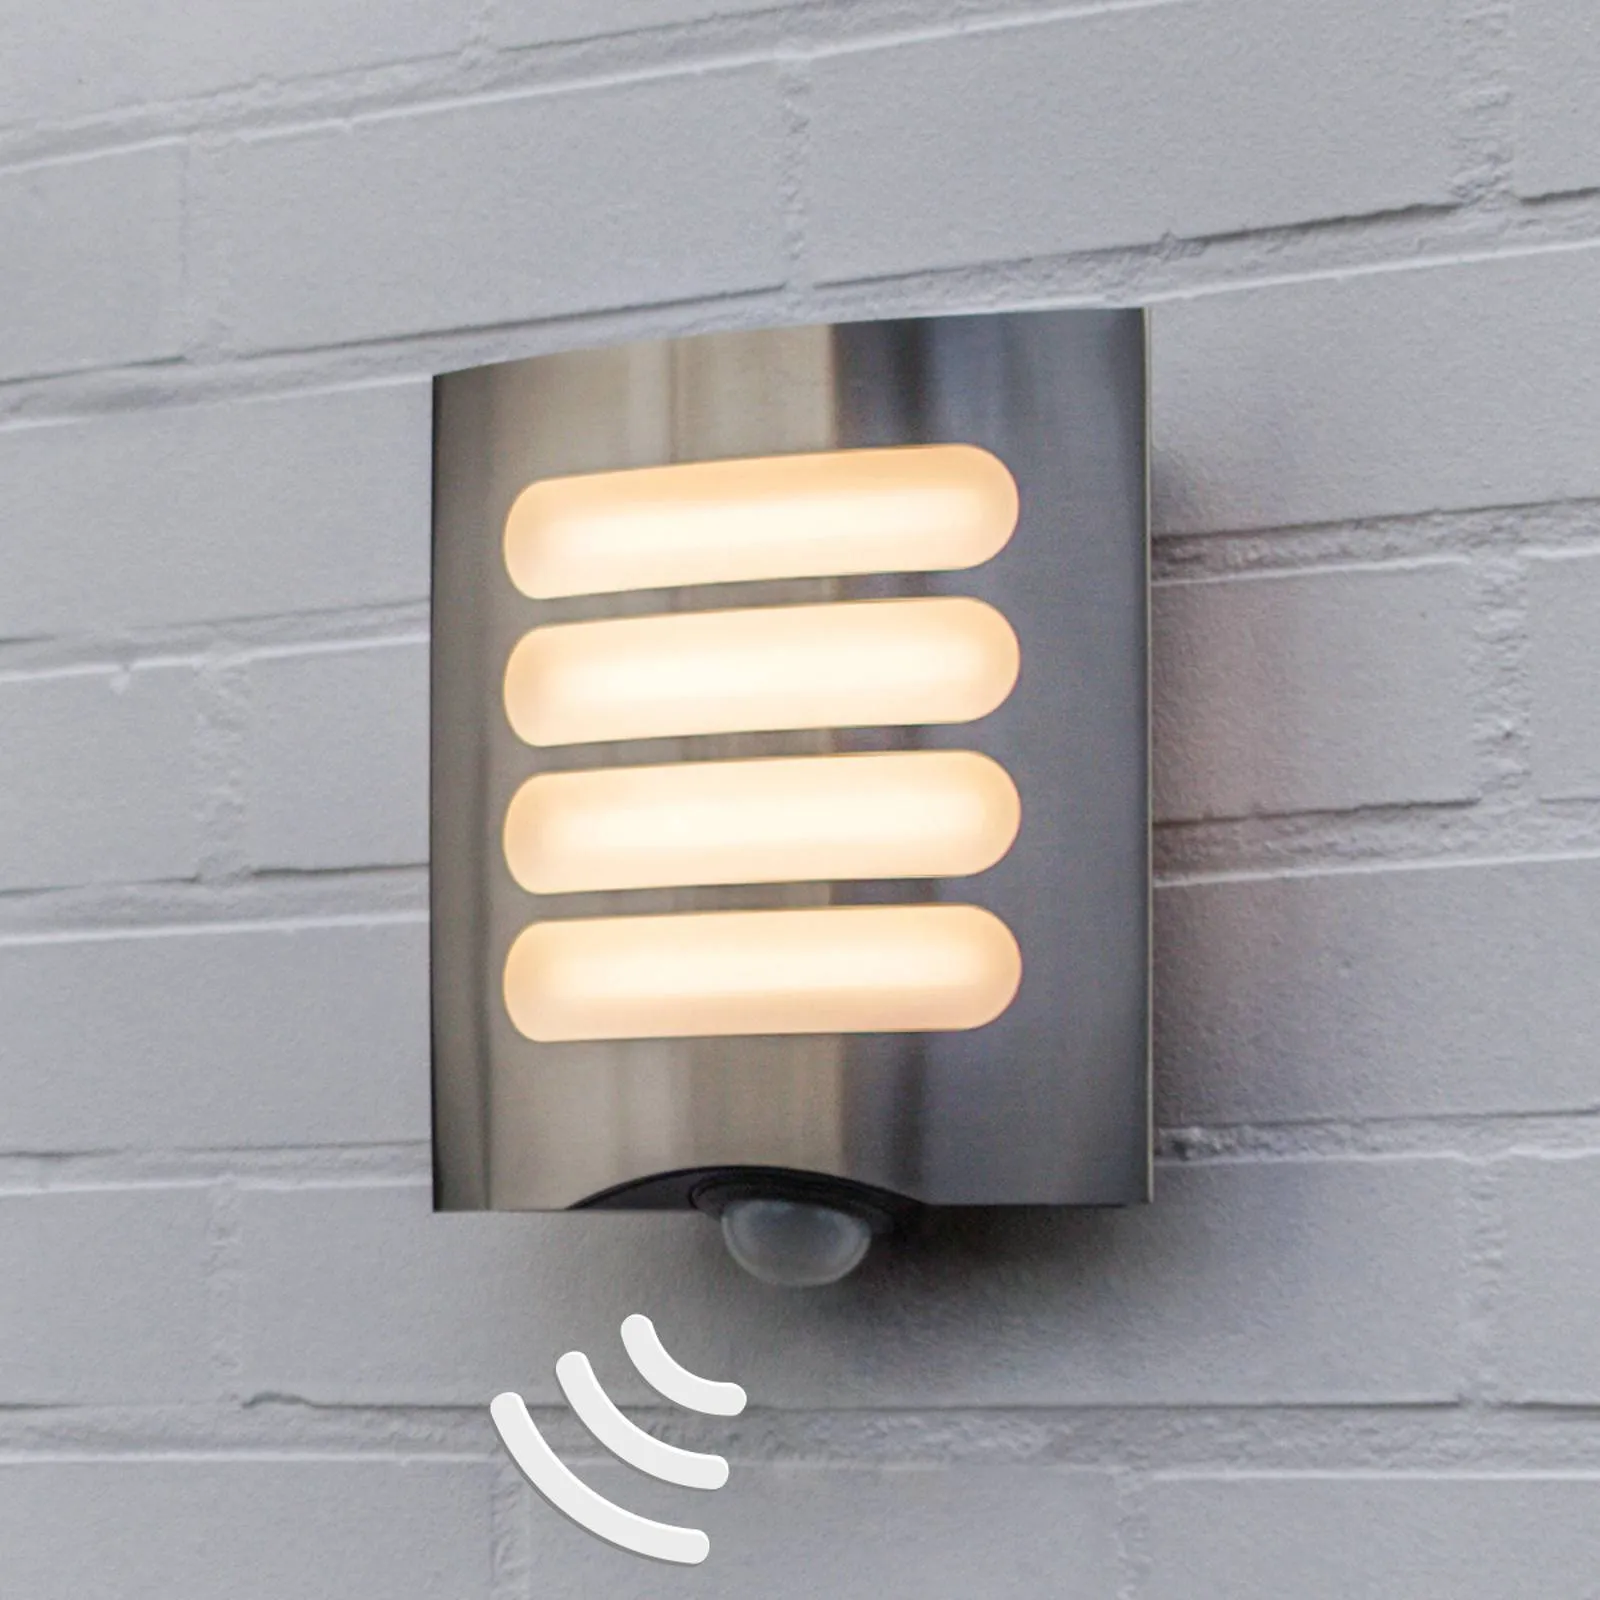 Farell sensor outdoor wall light, split diffuser